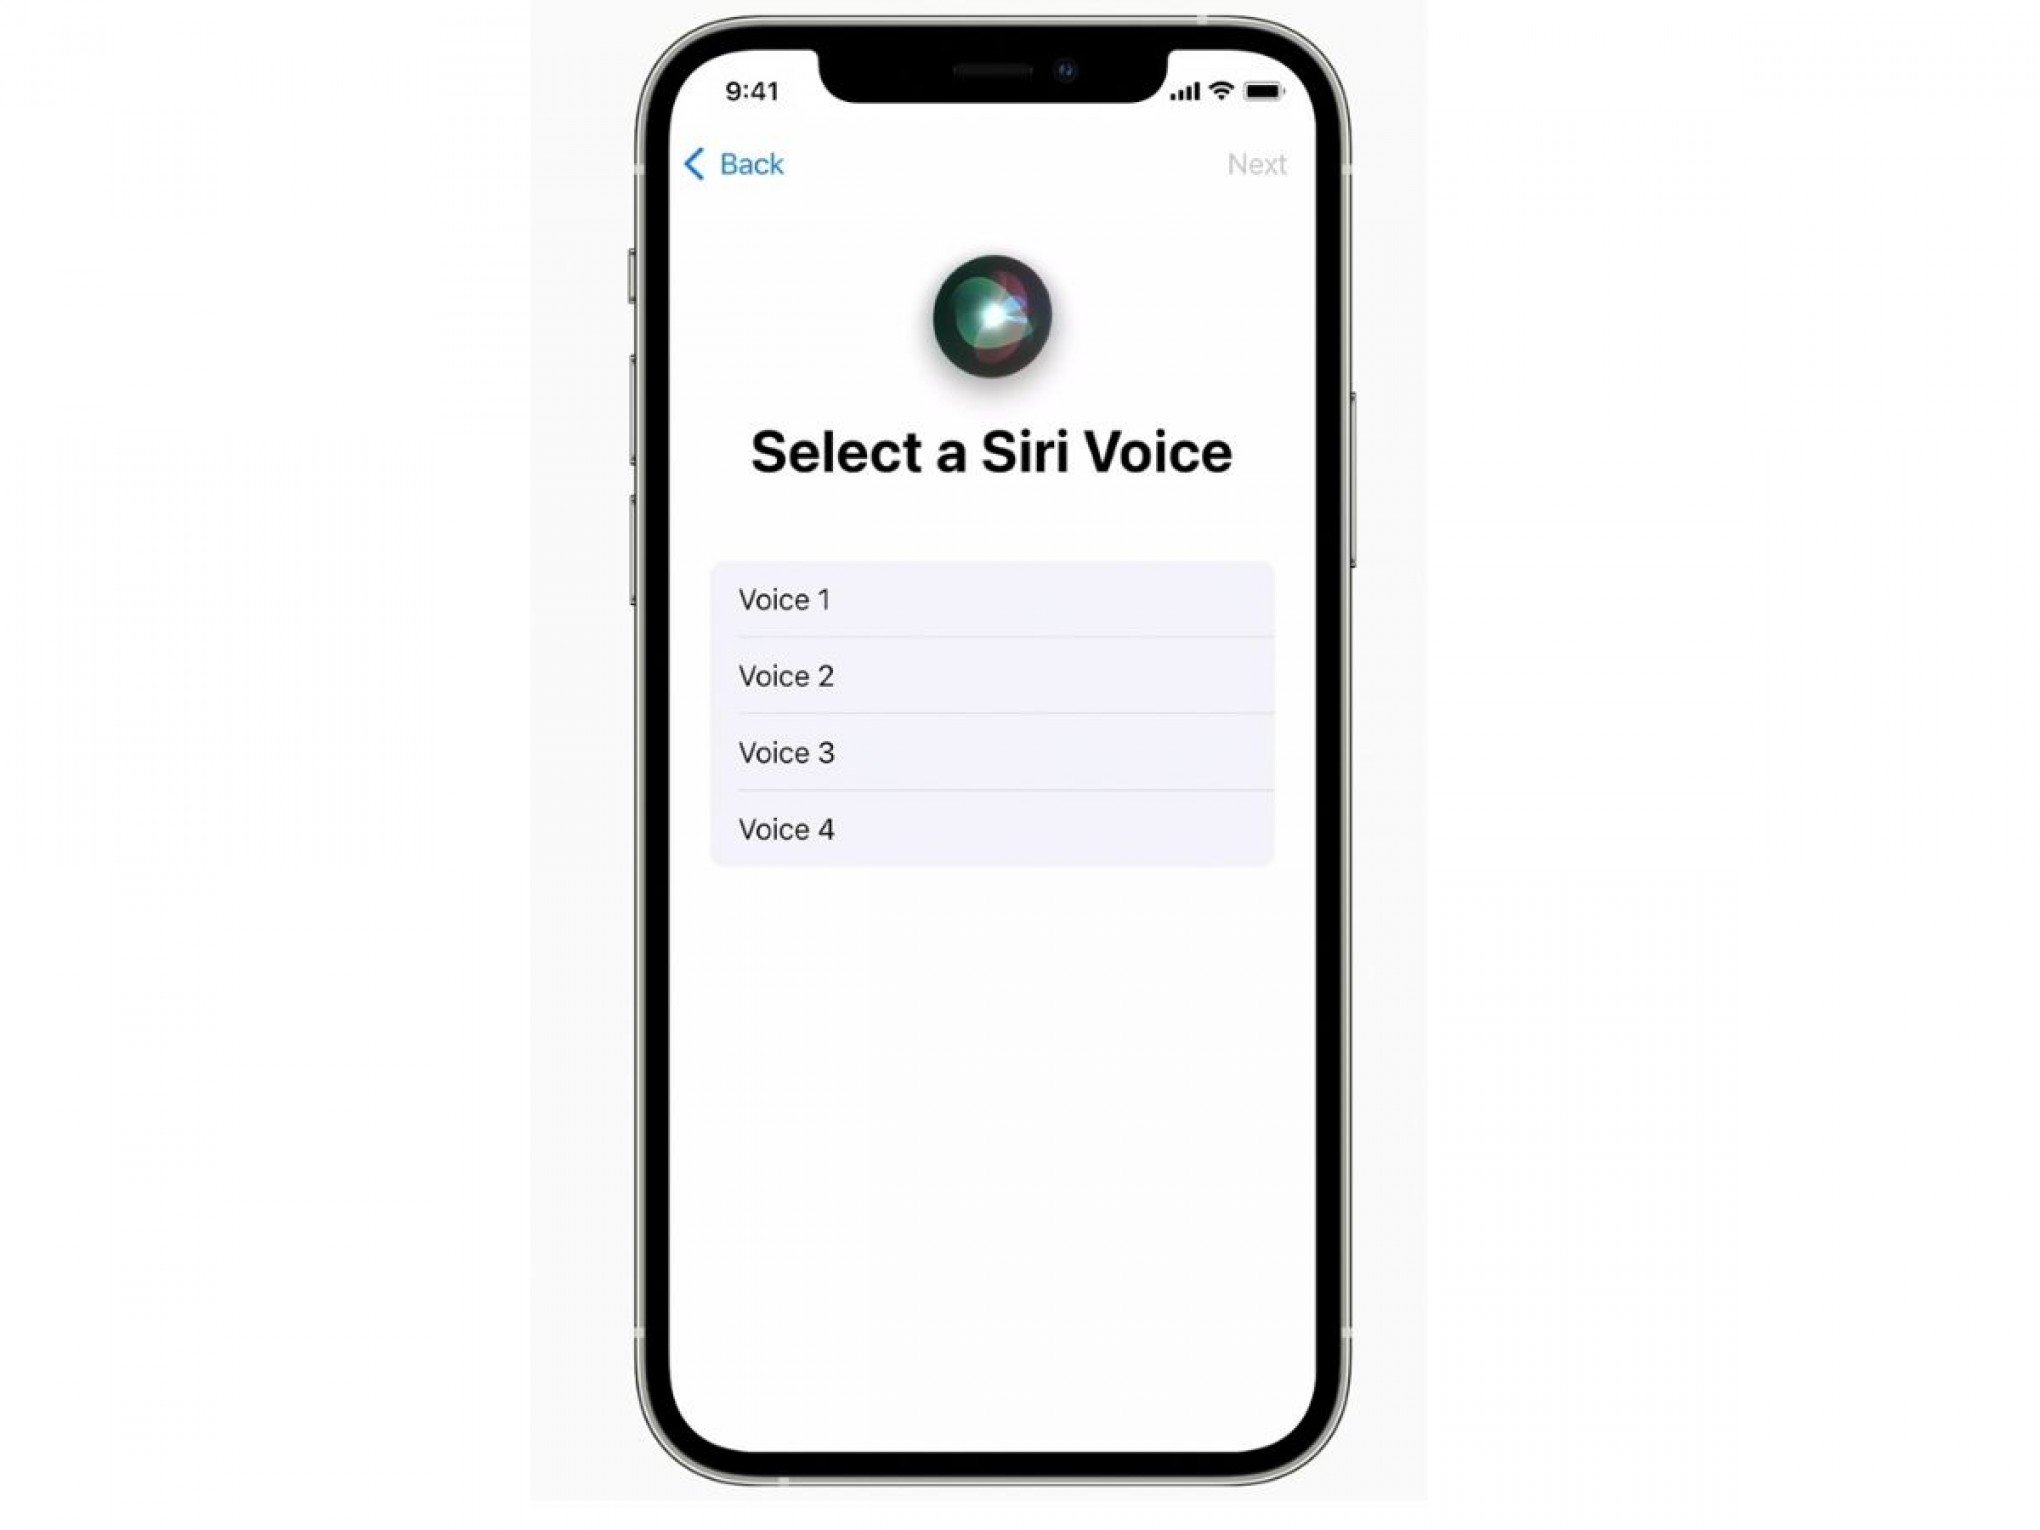 Nova Siri do iPhone vai acessar aplicativos e realizar tarefas complexas com IA